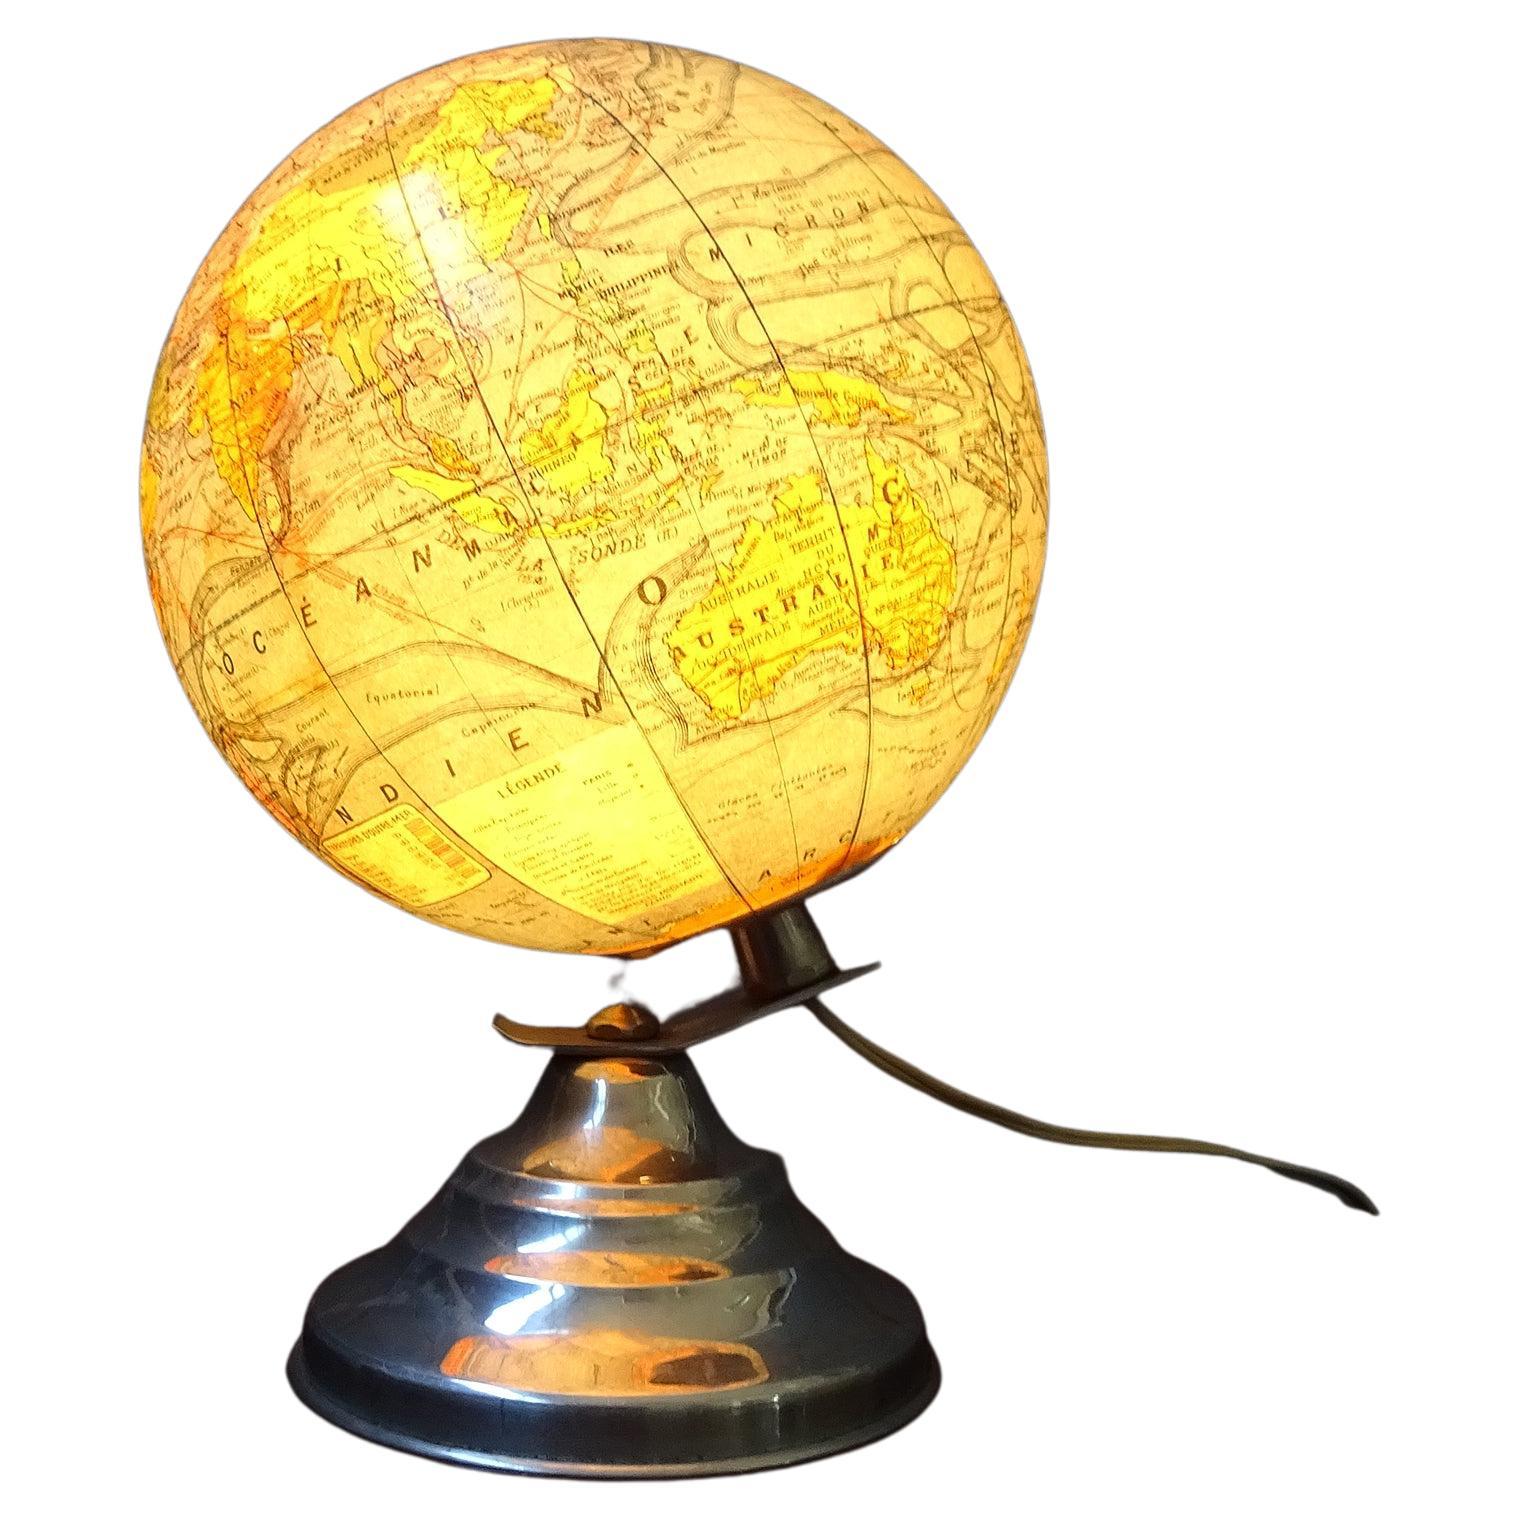 Französischer Globus von Girard Barrère & Thomas. Diese kleine leuchtende Glaskugel wurde vor 1948 hergestellt. Typisches Art-Déco-Design auf einem stufenförmigen Sockel aus Aluminium und einem Globus aus Glas.